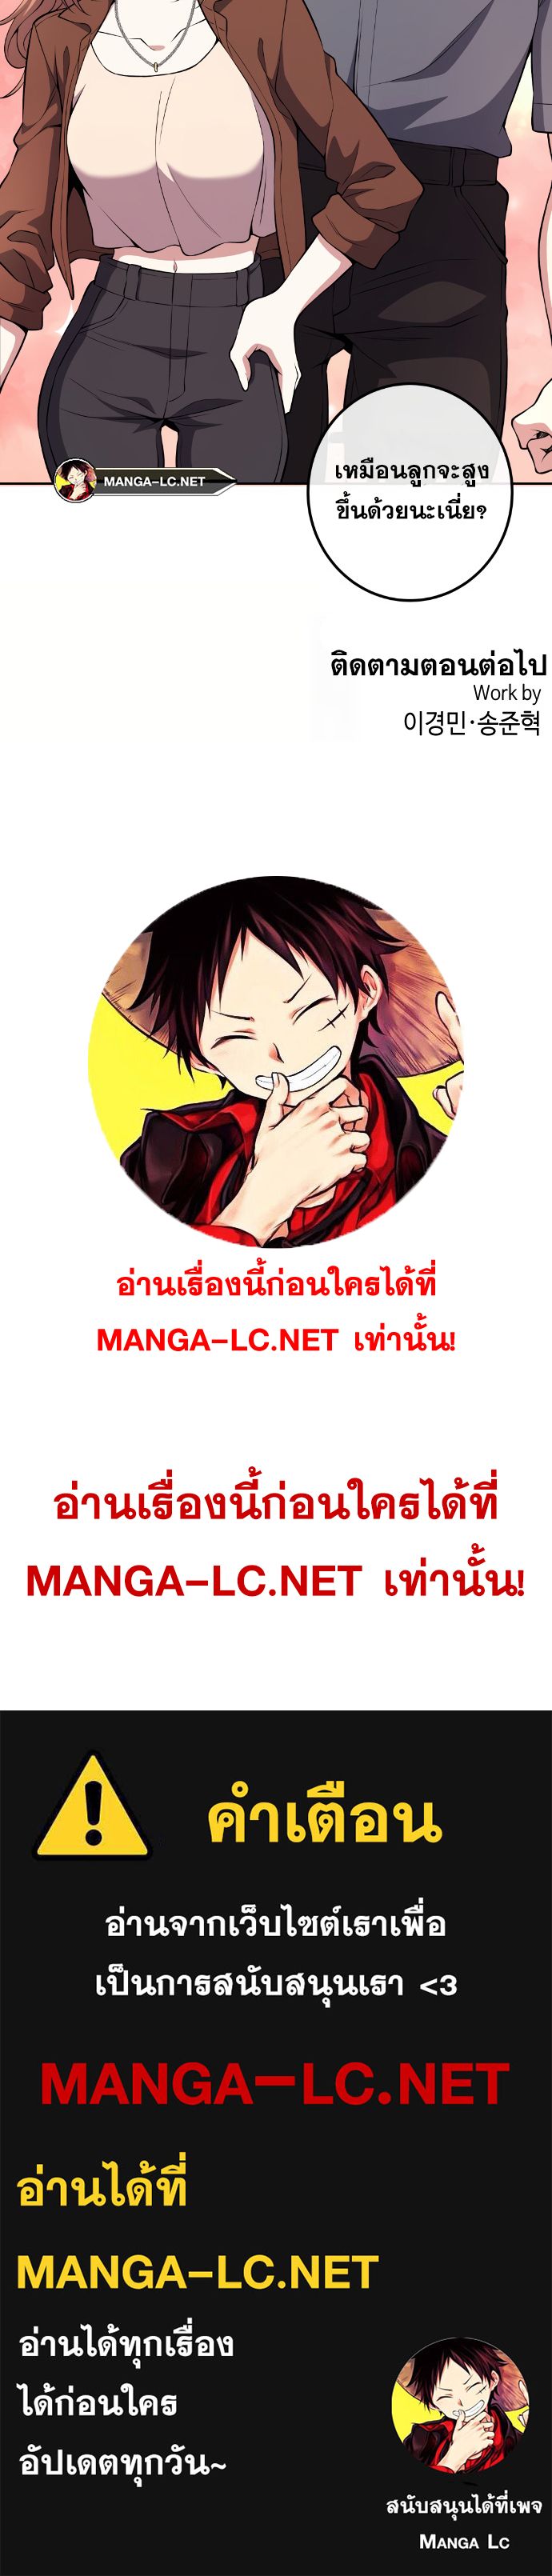 อ่านมังงะ Webtoon Character Na Kang Lim ตอนที่ 138/33.jpg